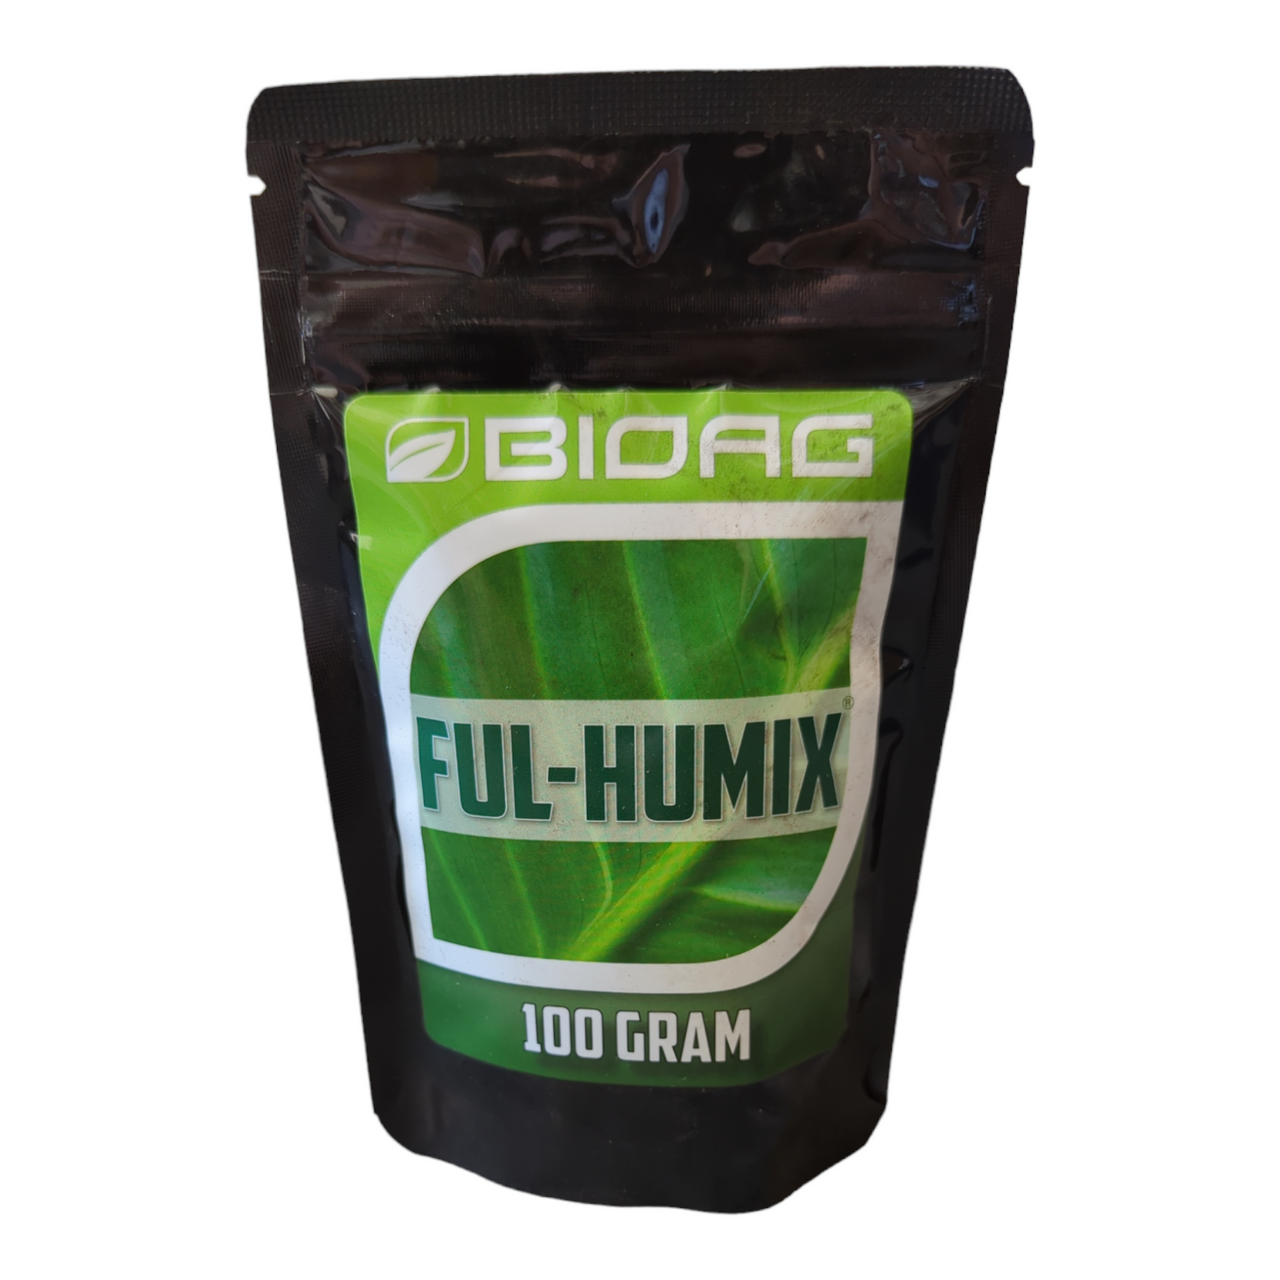 BioAg Ful-Humix